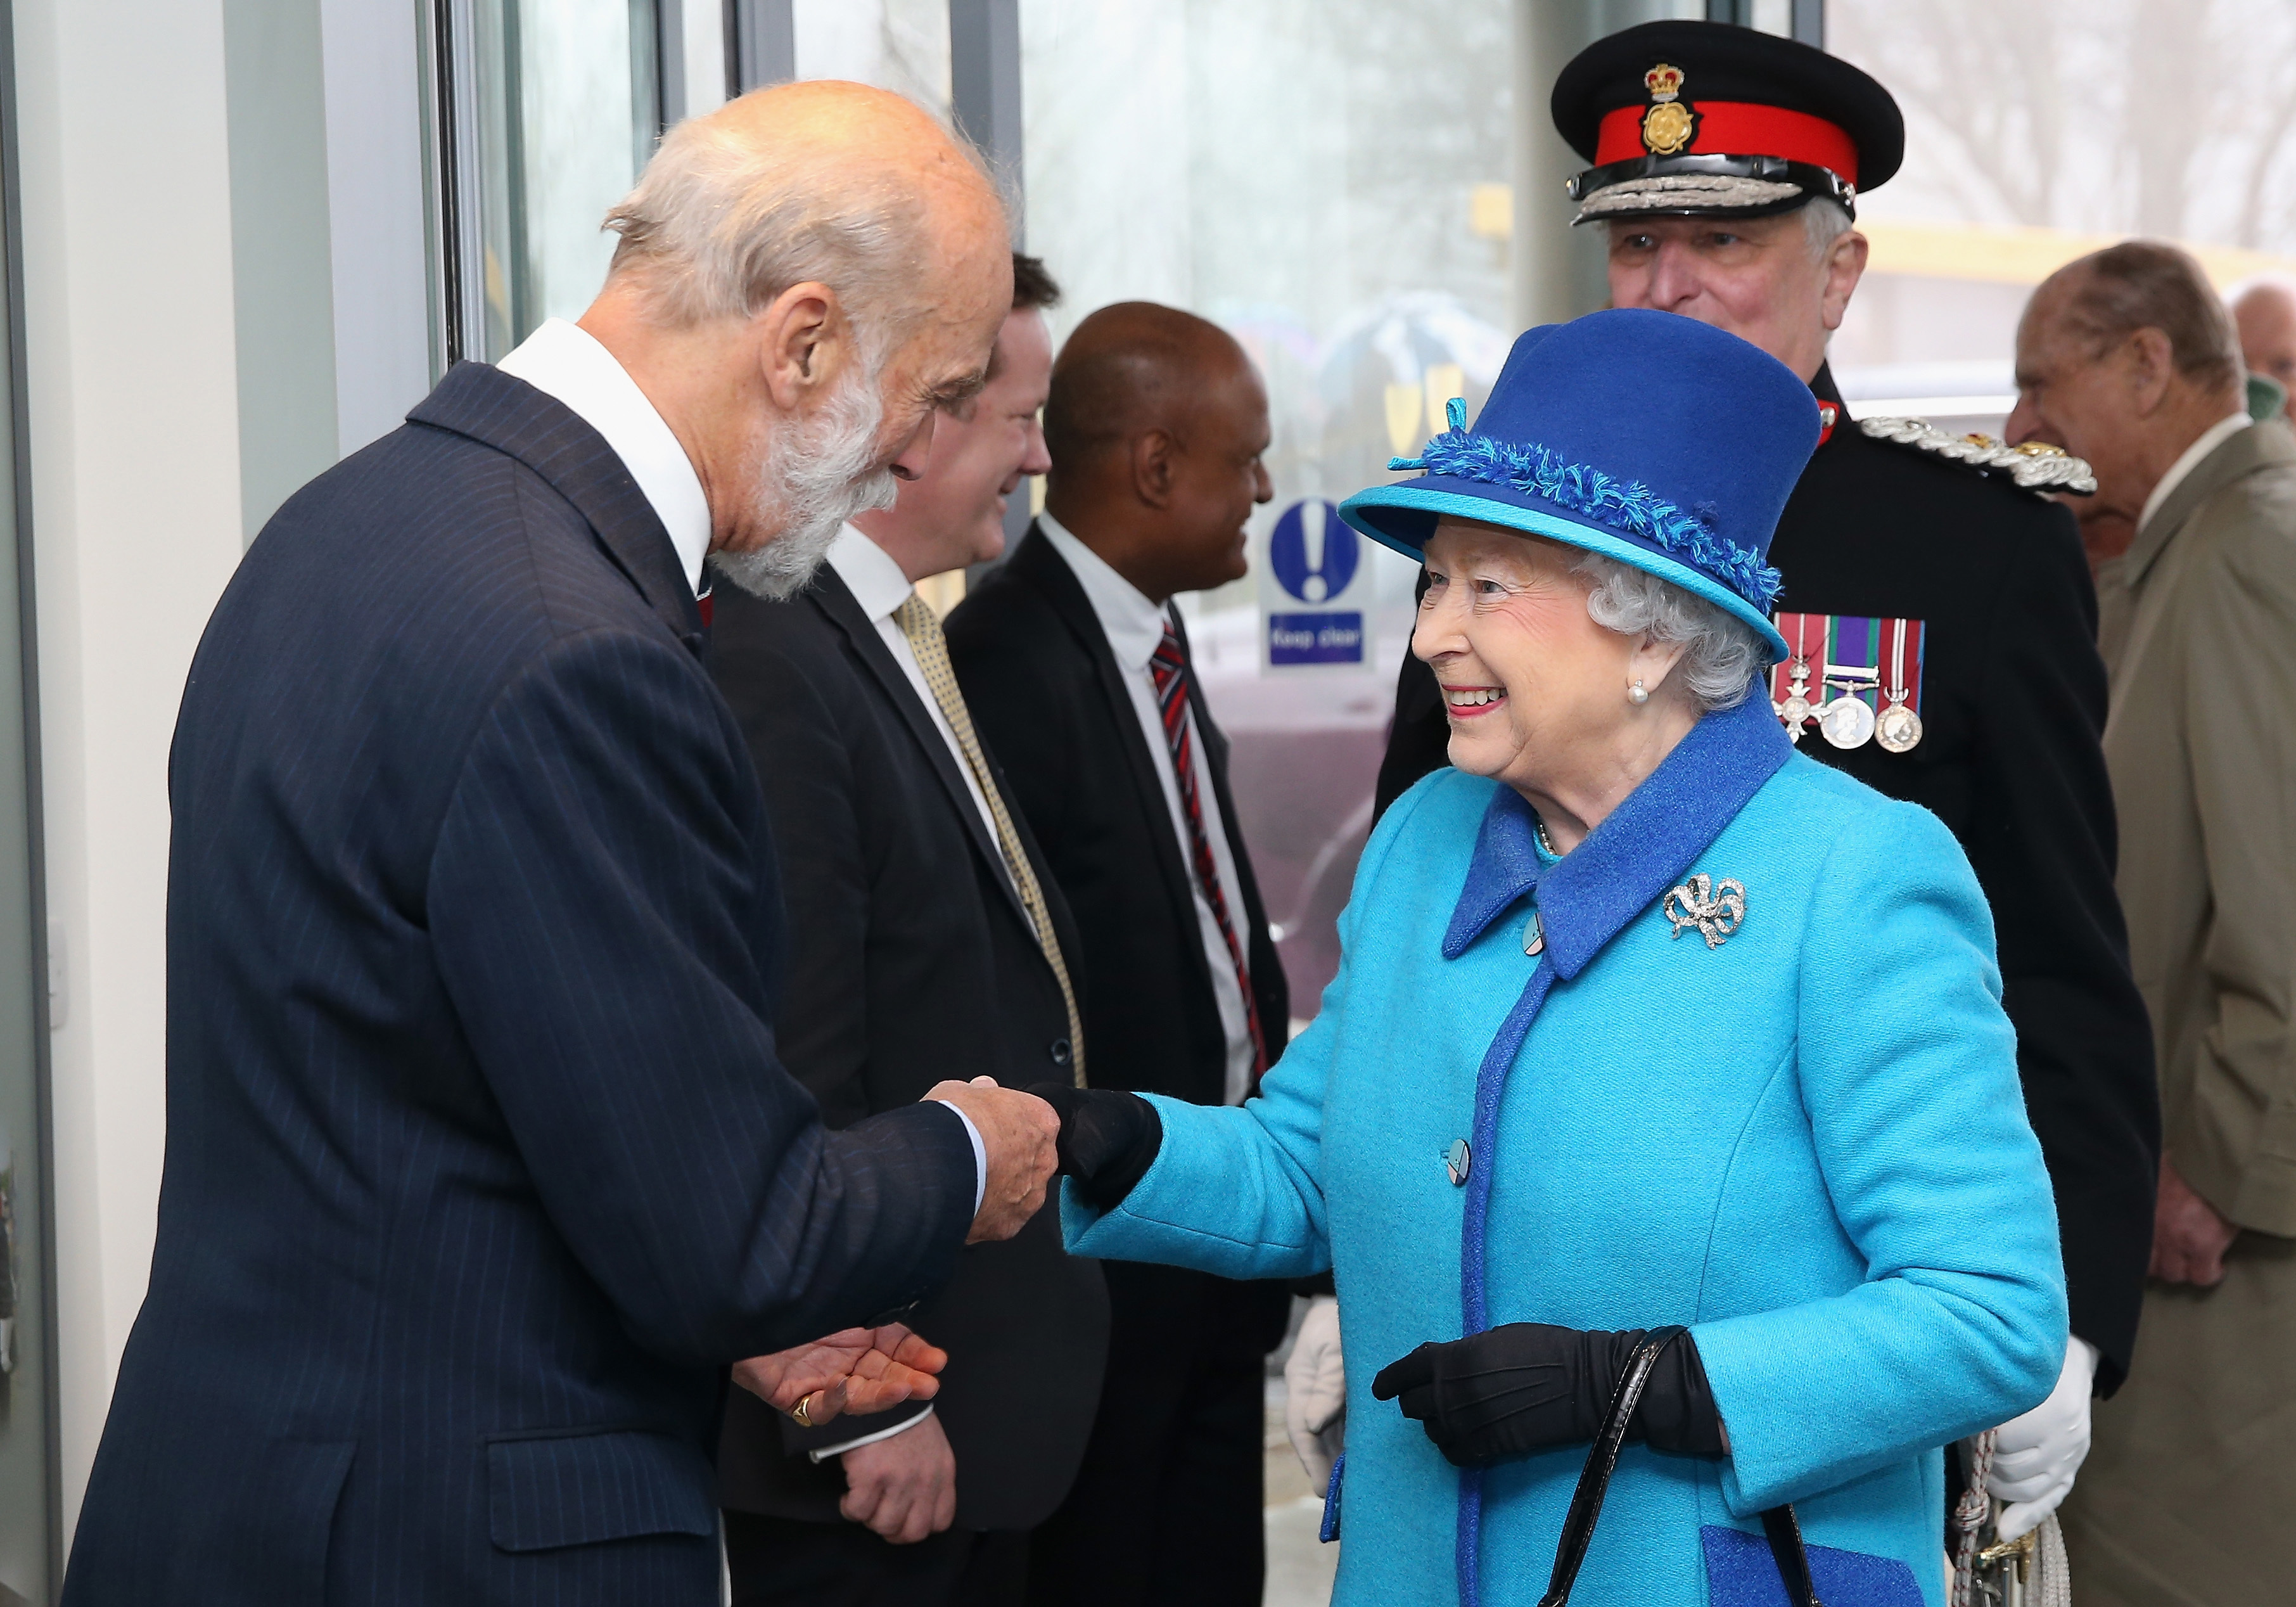 Queen Elizabeth II greets Prince Michael of Kent